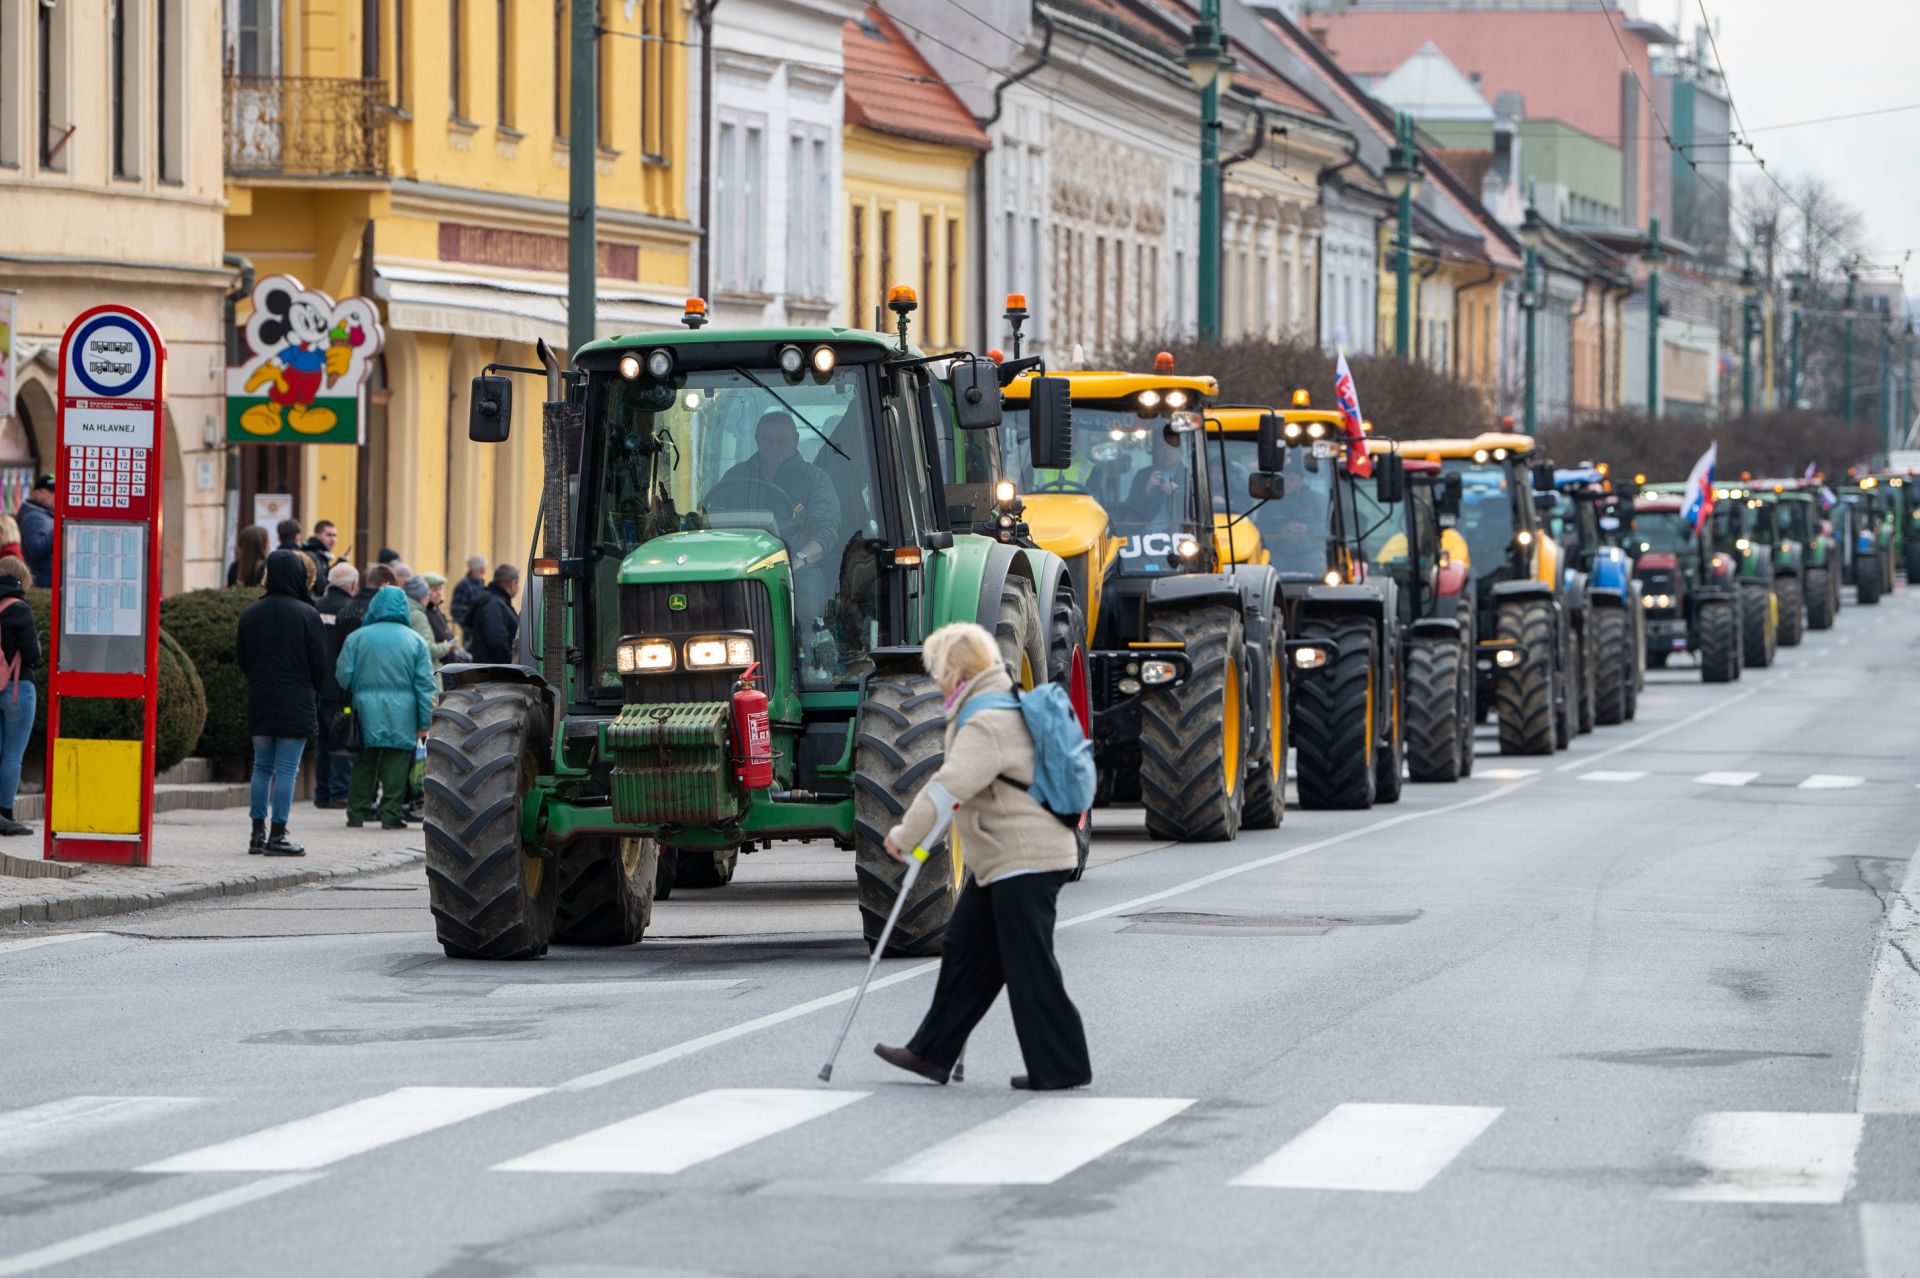 Kolóna poľnohospodárskej techniky v uliciach Prešova počas celoslovenského protestu farmárov.